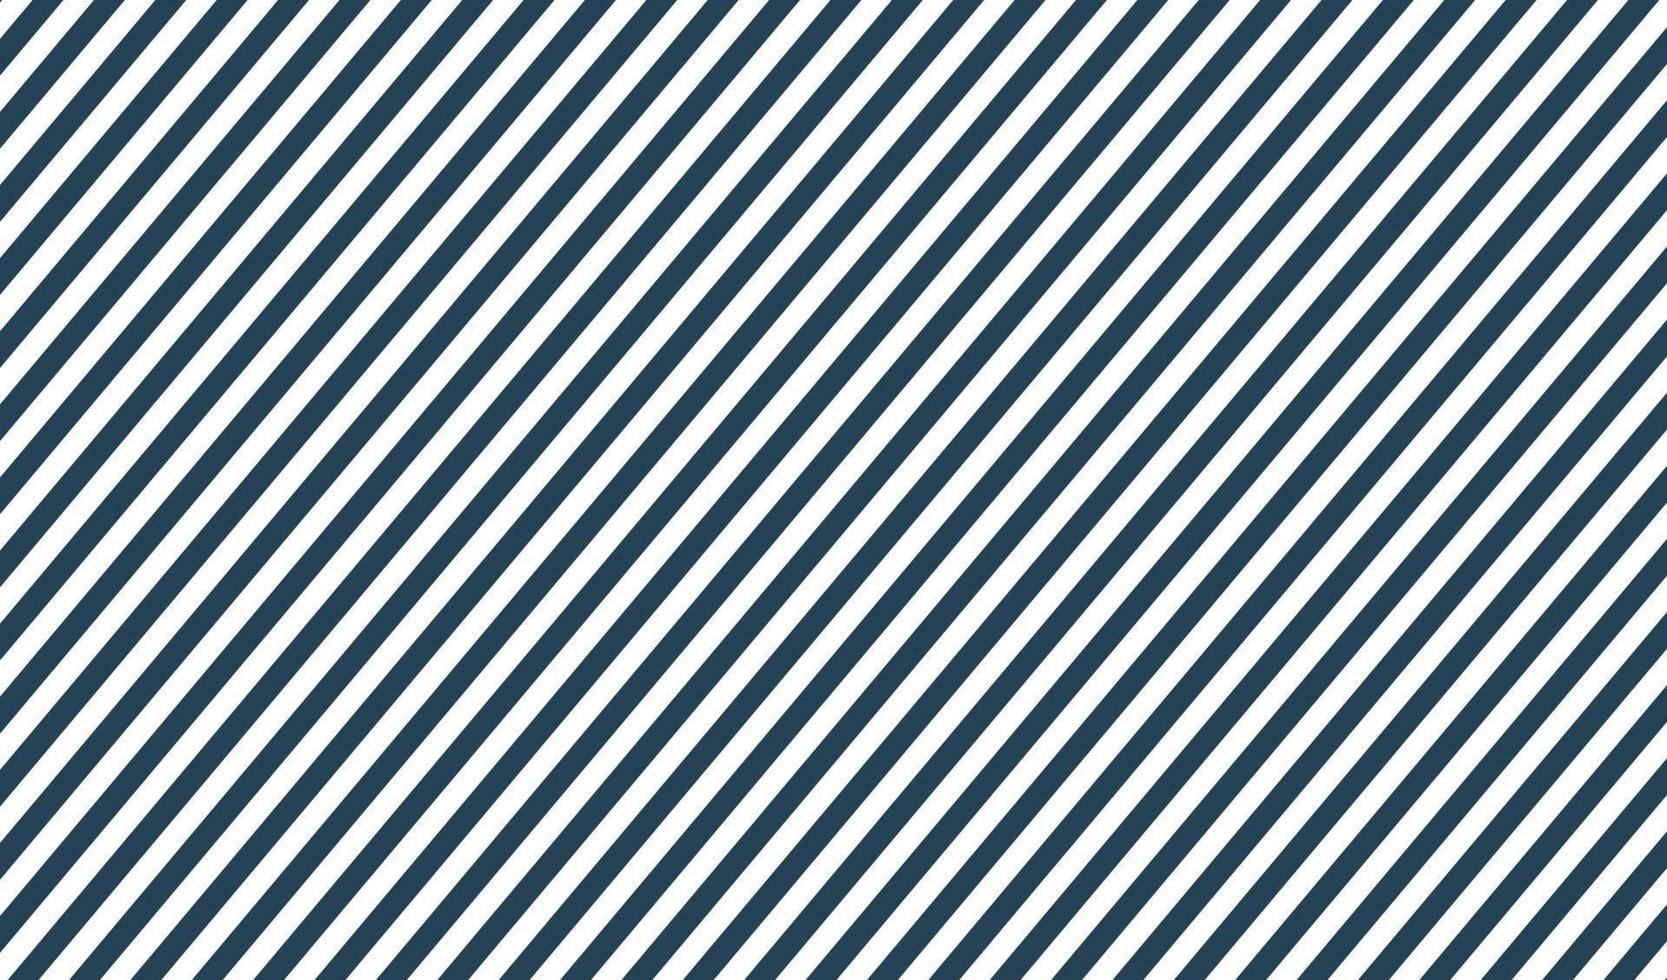 padrão de listras azuis linha zebra elegante fundo retrô vintage vetor